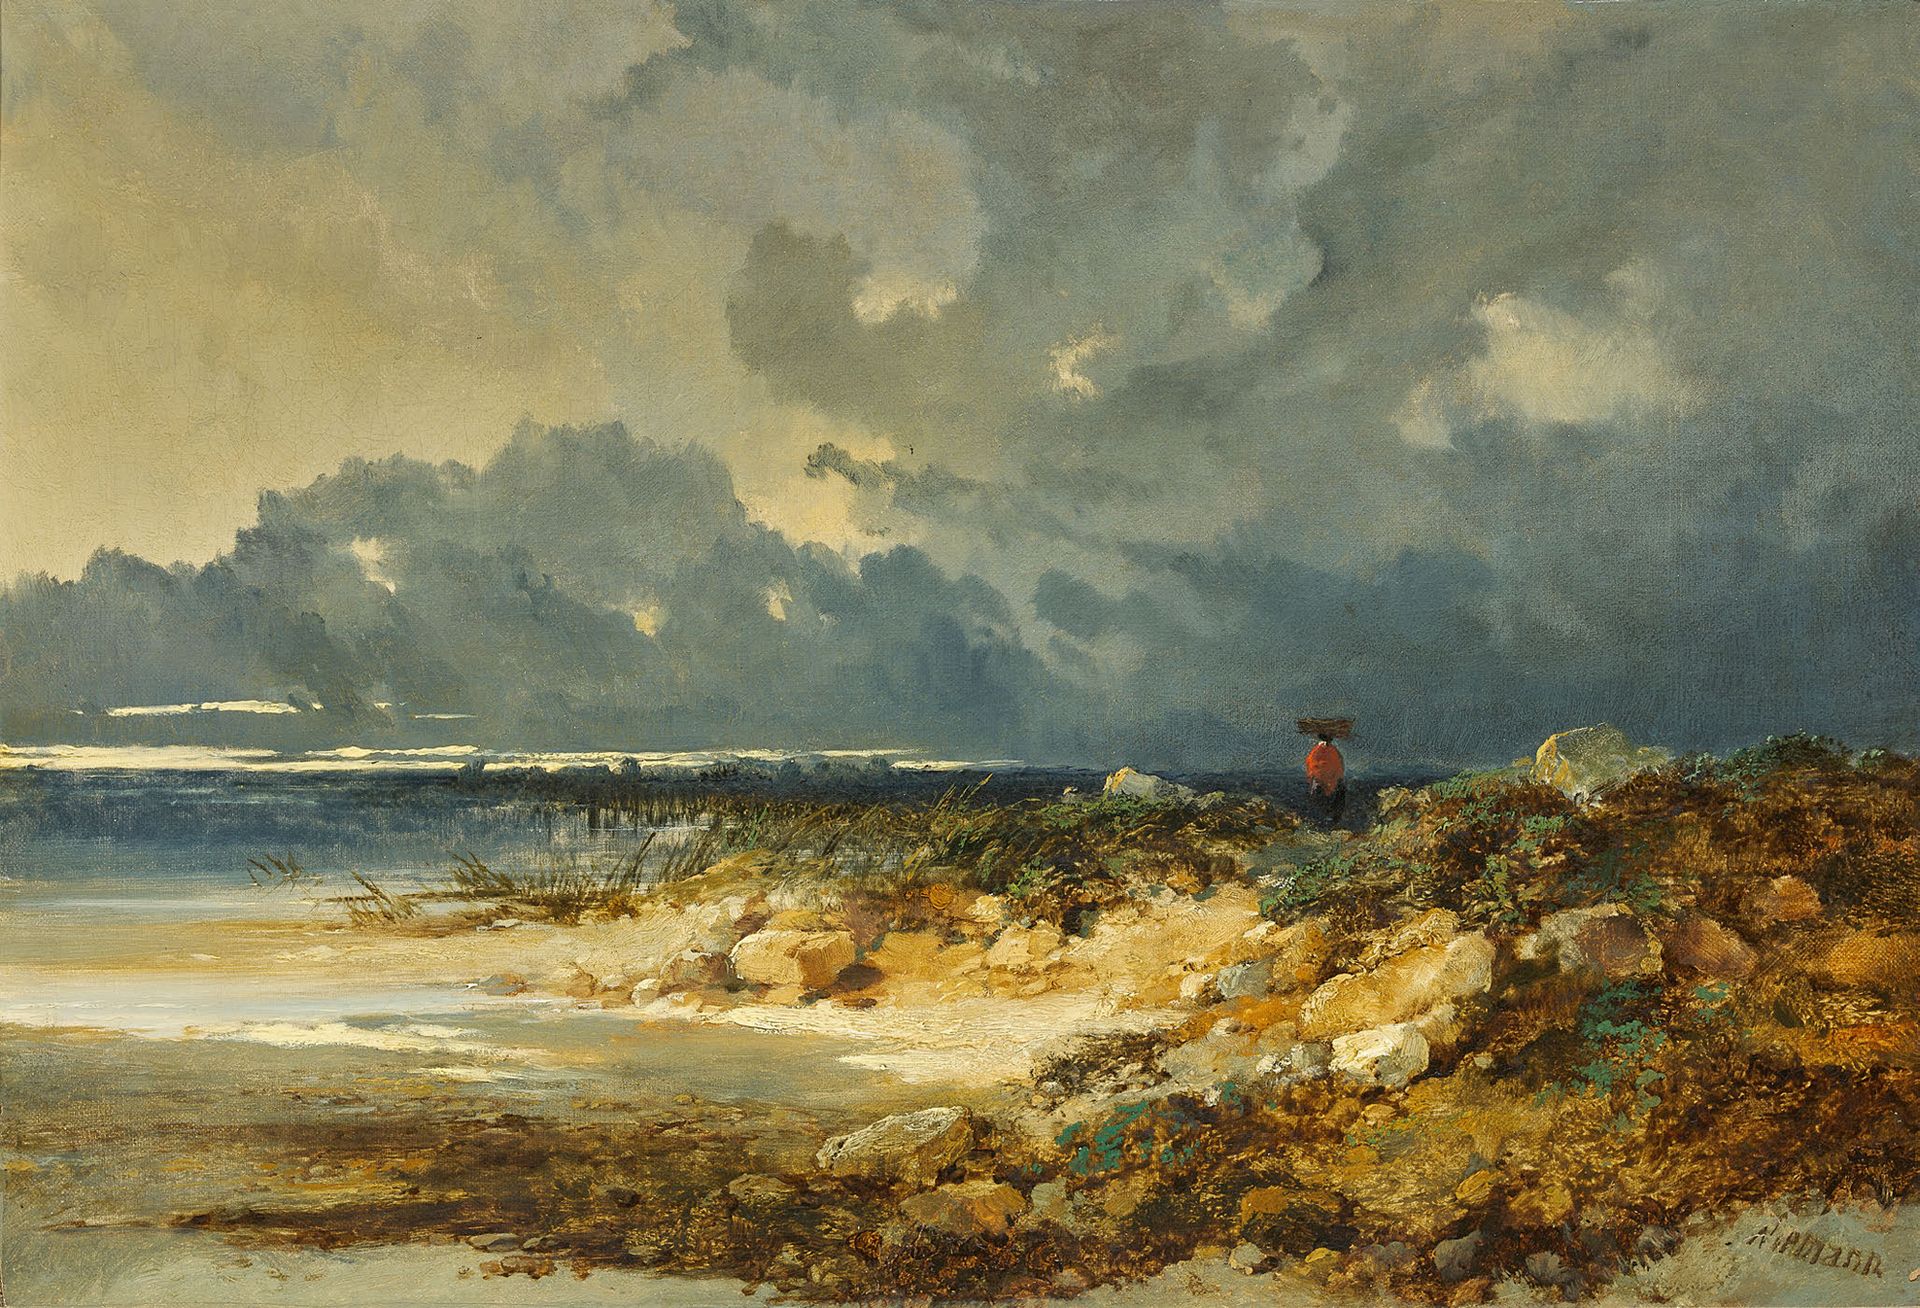 EDMUND JOHN NIEMANN LONDRES, 1813 - 1876 Meeresufer
Öl auf Leinwand
Unten rechts&hellip;